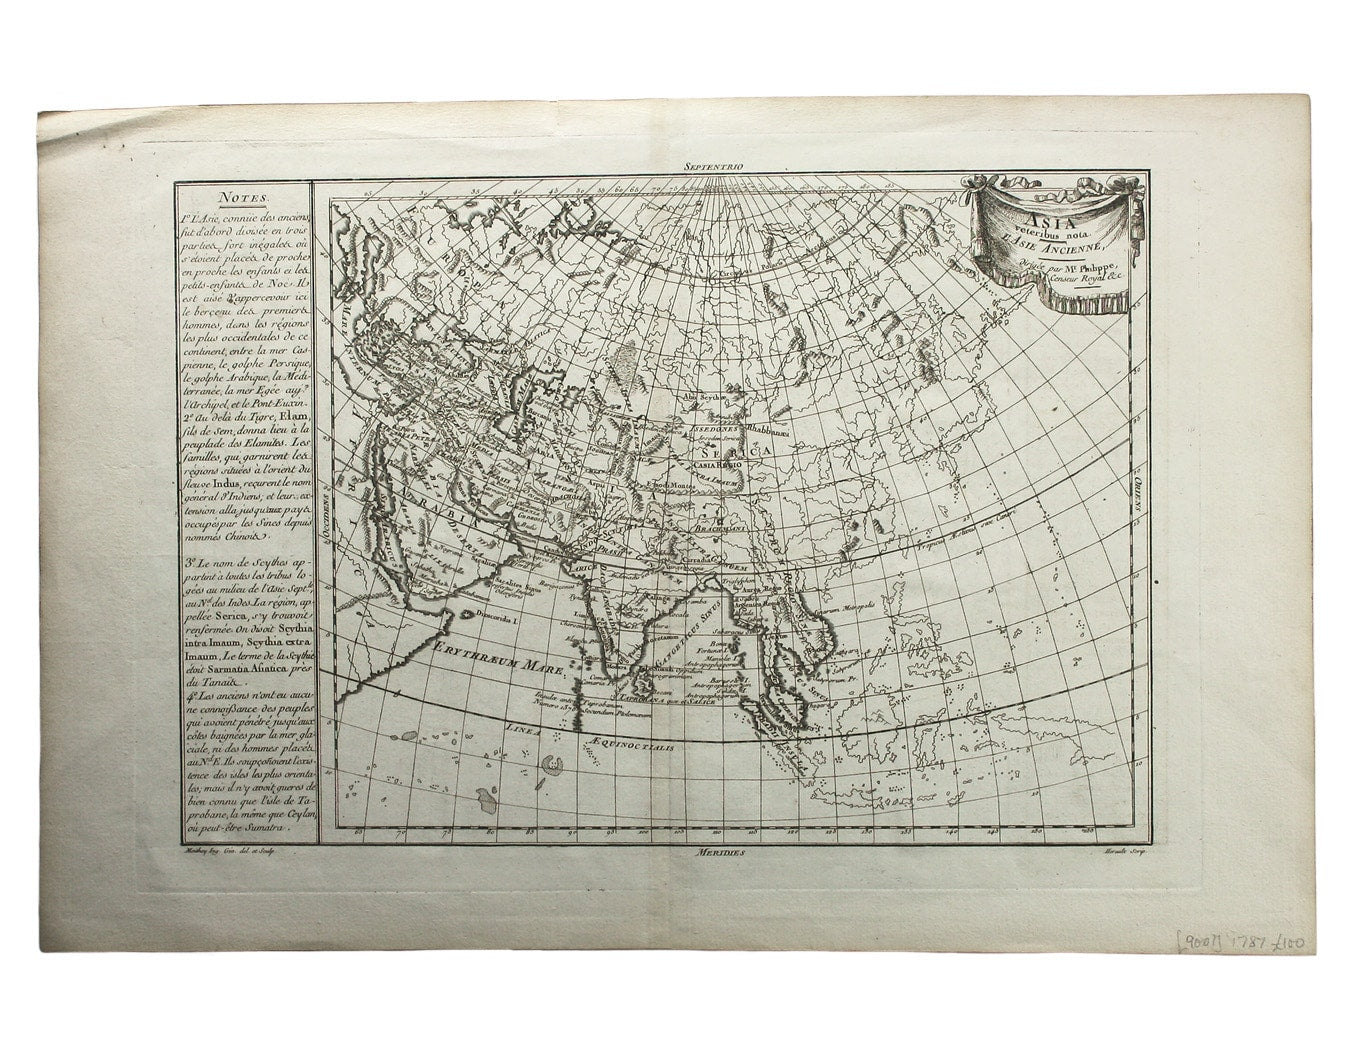 Philippe de Prétot’s Map of Ancient Asia